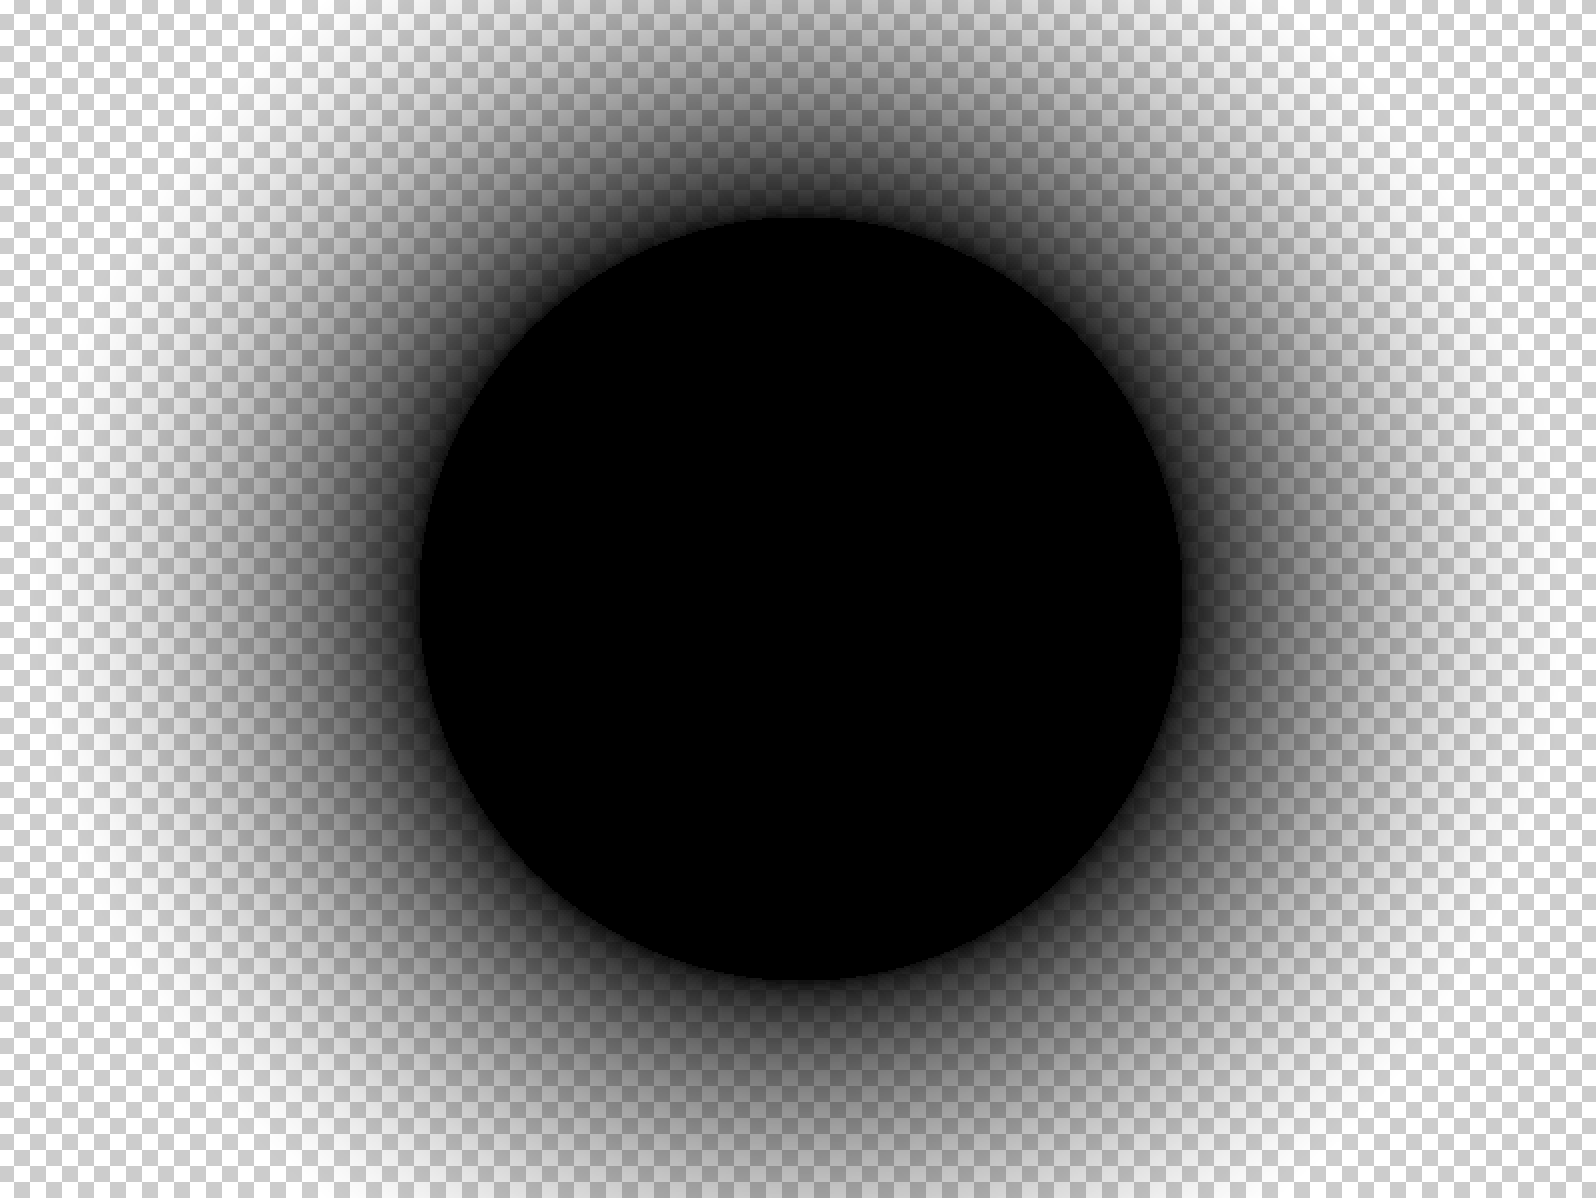 Alpha тень. Круглая маска для обс. Черный круг. Тень на прозрачном фоне. Затемненный круг.